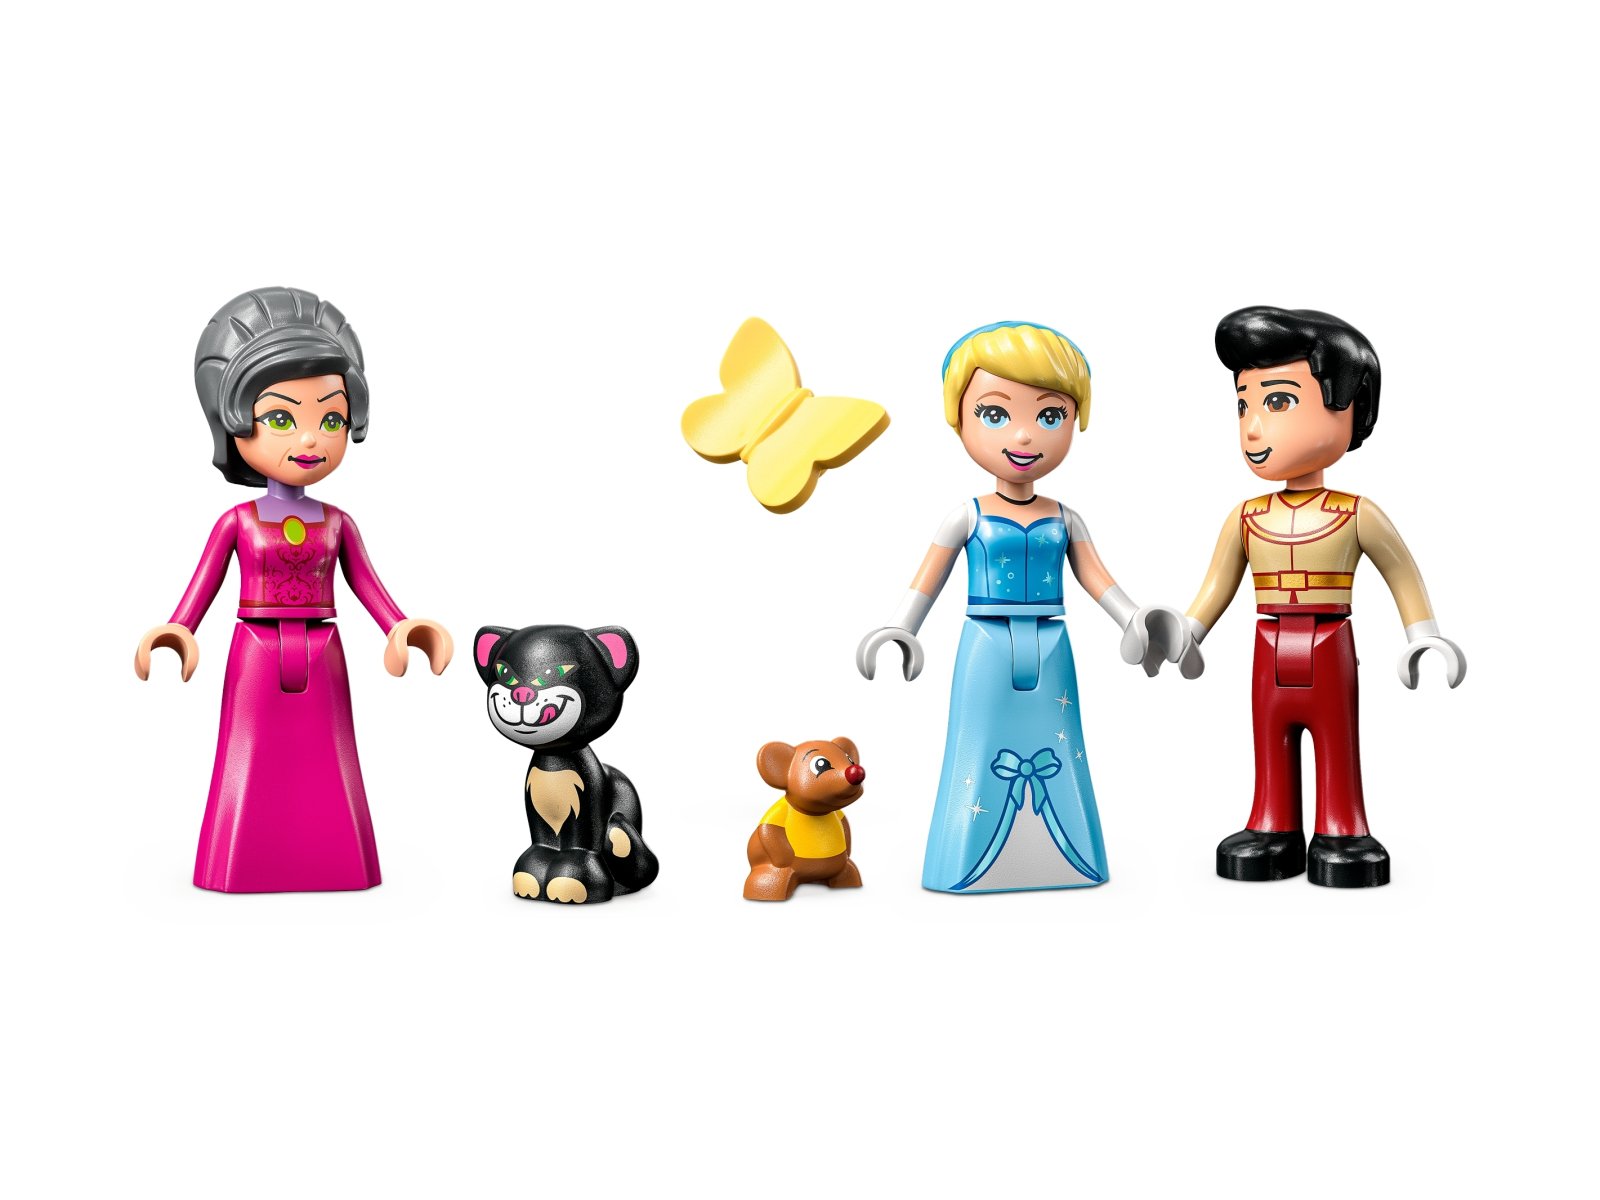 LEGO Disney 43206 Zamek Kopciuszka i księcia z bajki